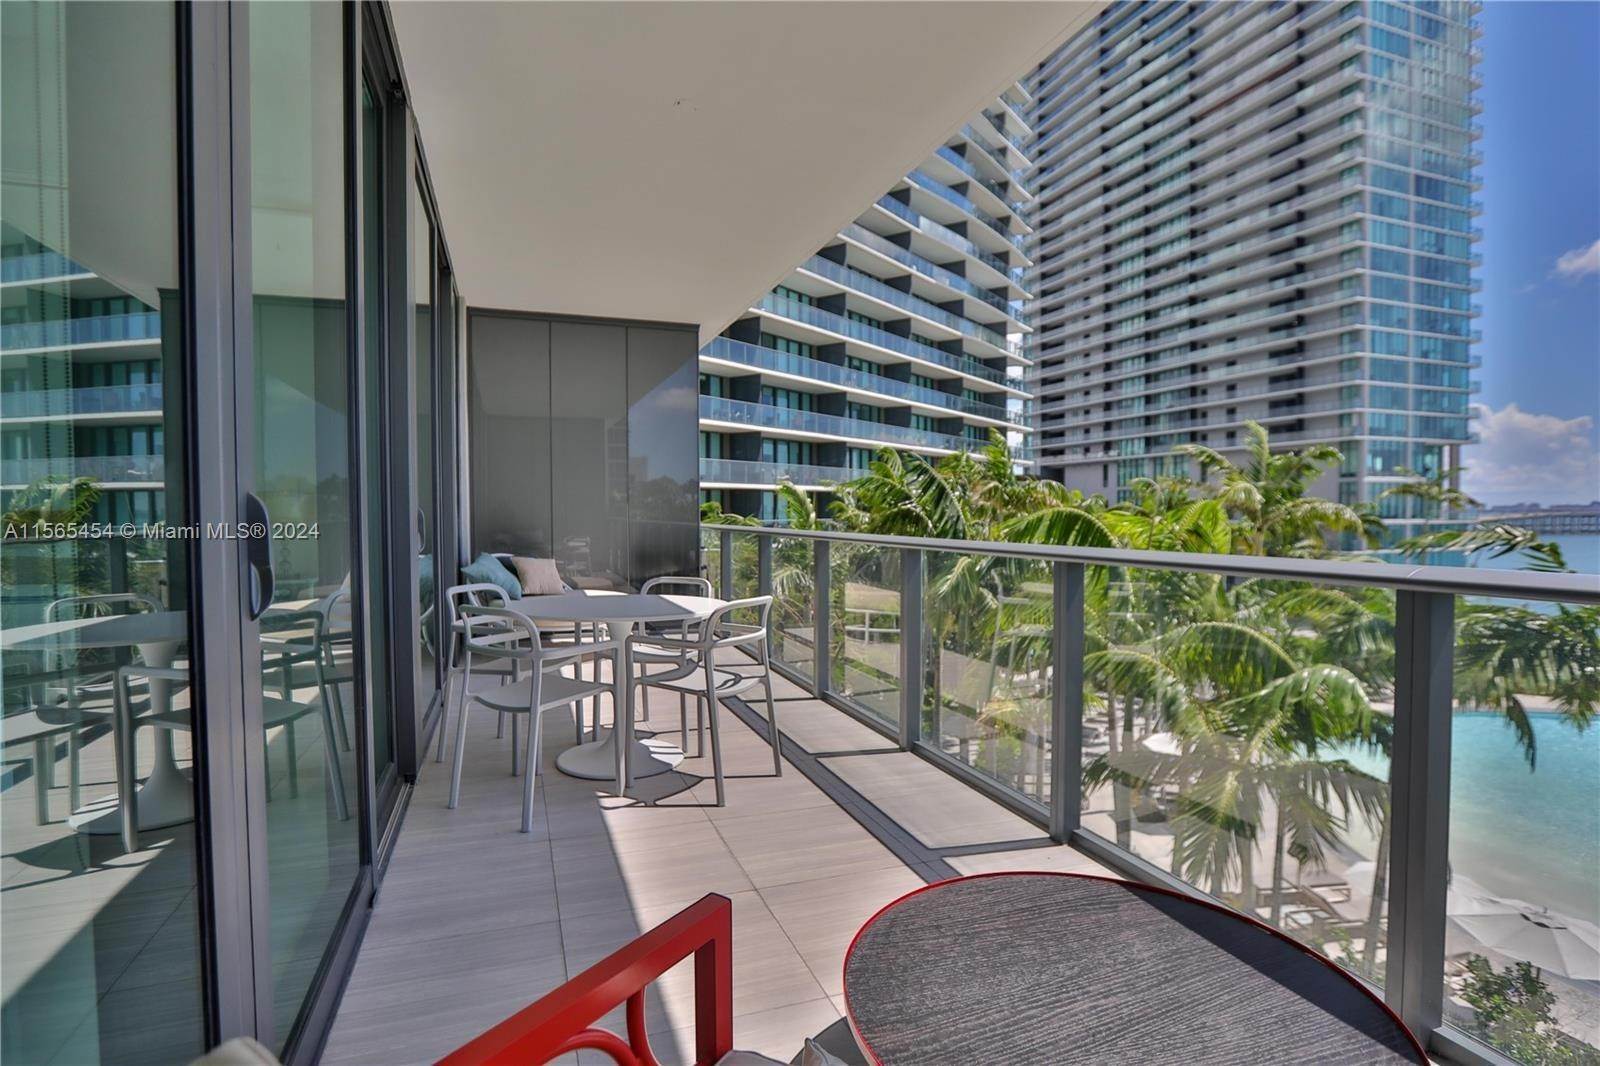 Condominium at Edgewater, Miami, FL 33137